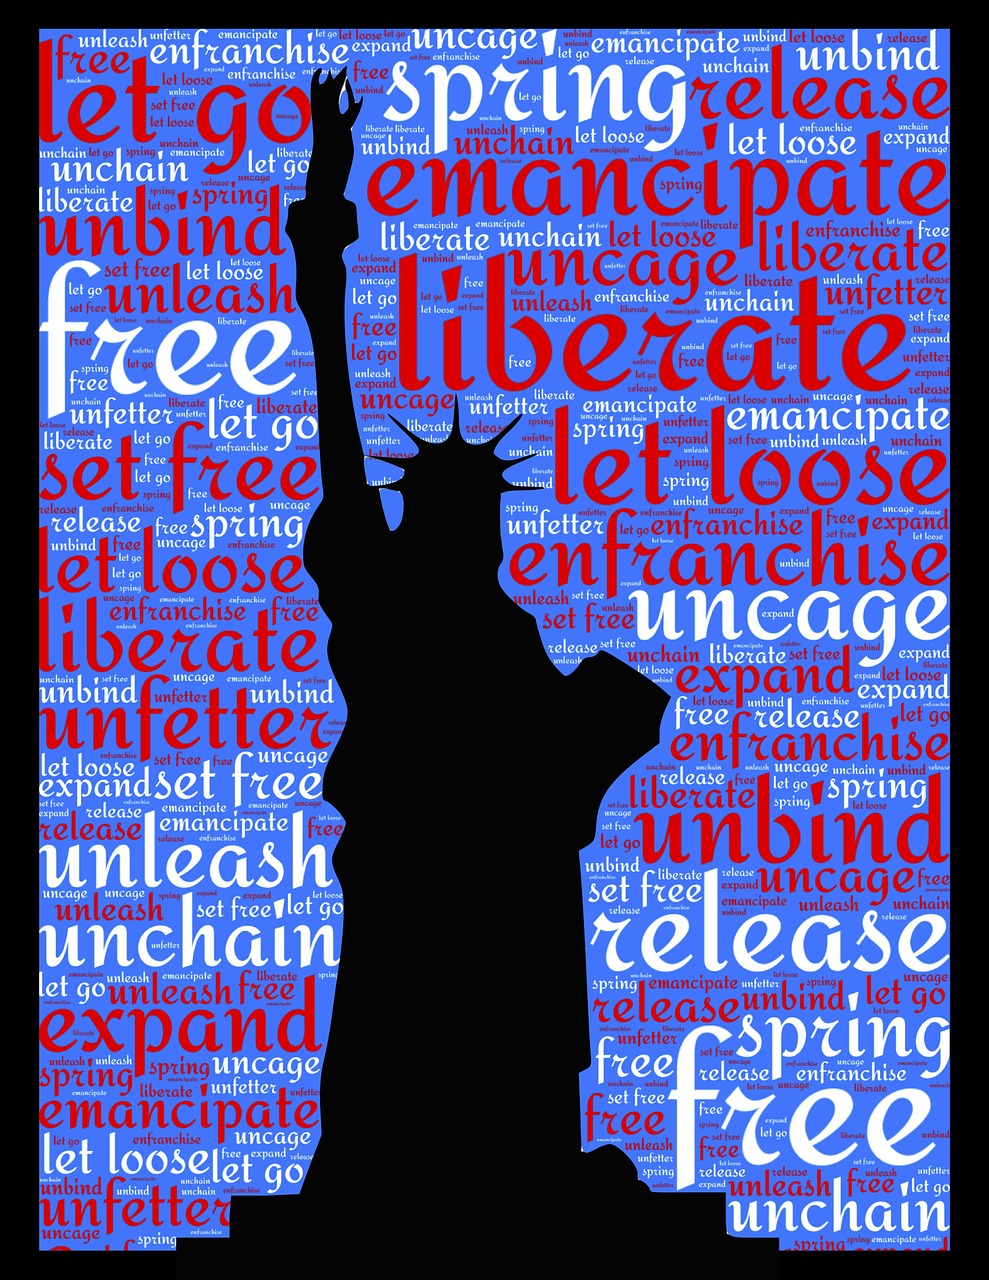 statue of liberty liberty liberate free photo